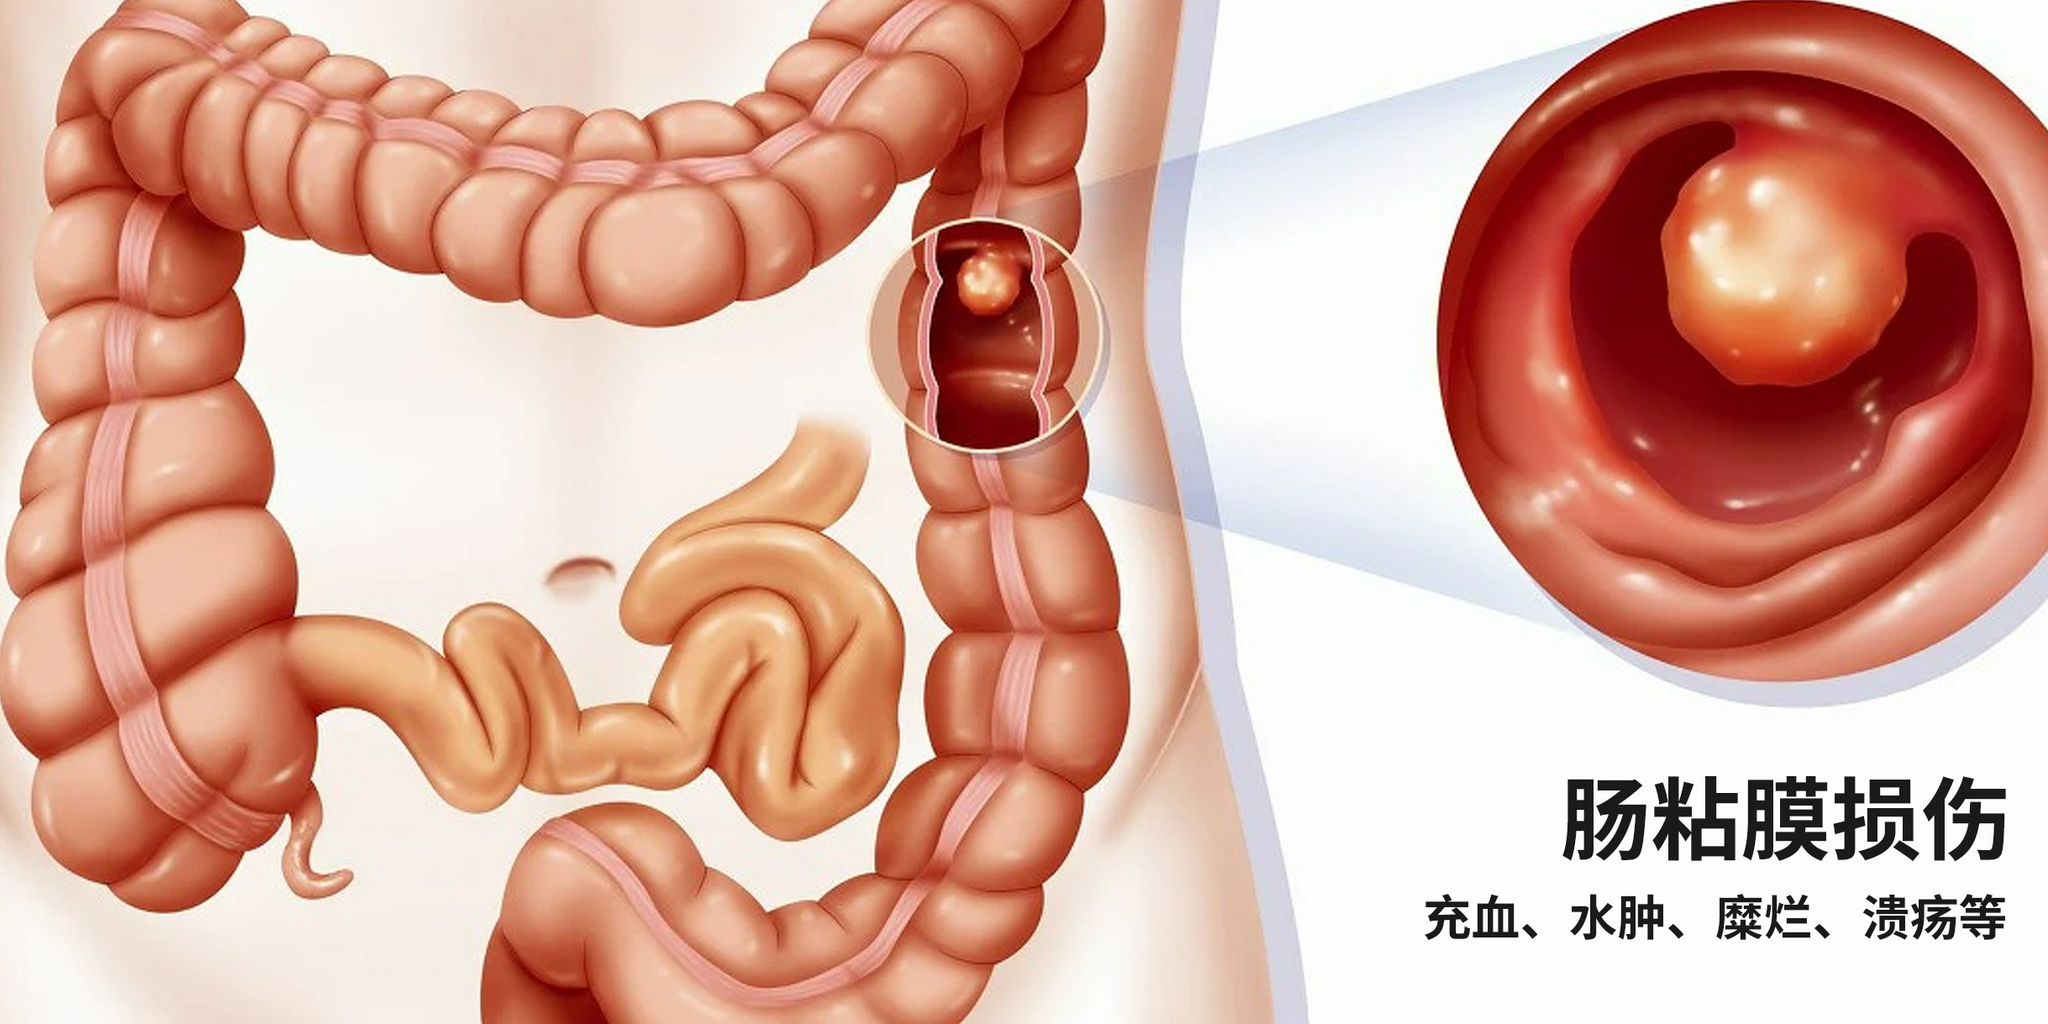 肠黏膜损伤可表现为充血,水肿,糜烂,溃疡等